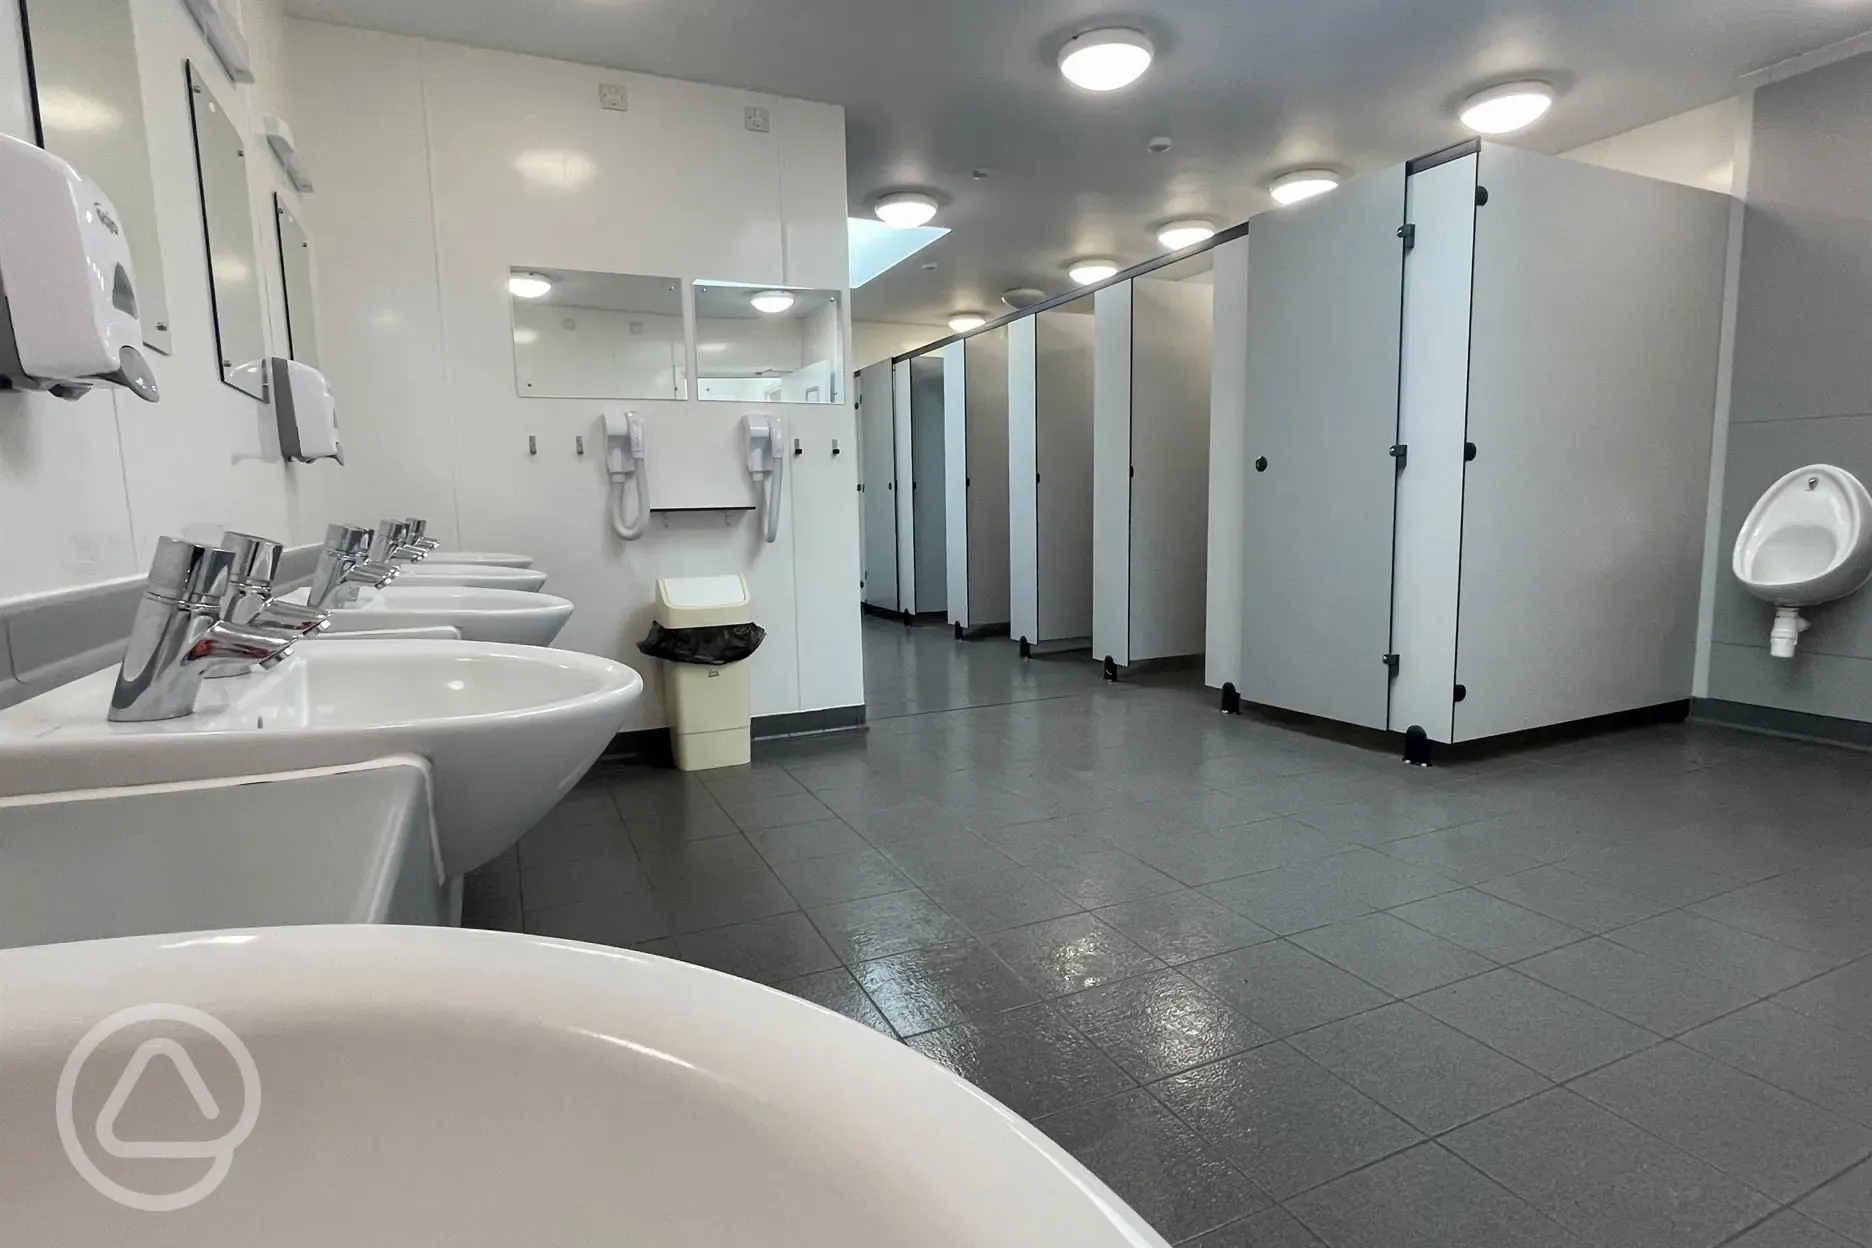 Male toilets